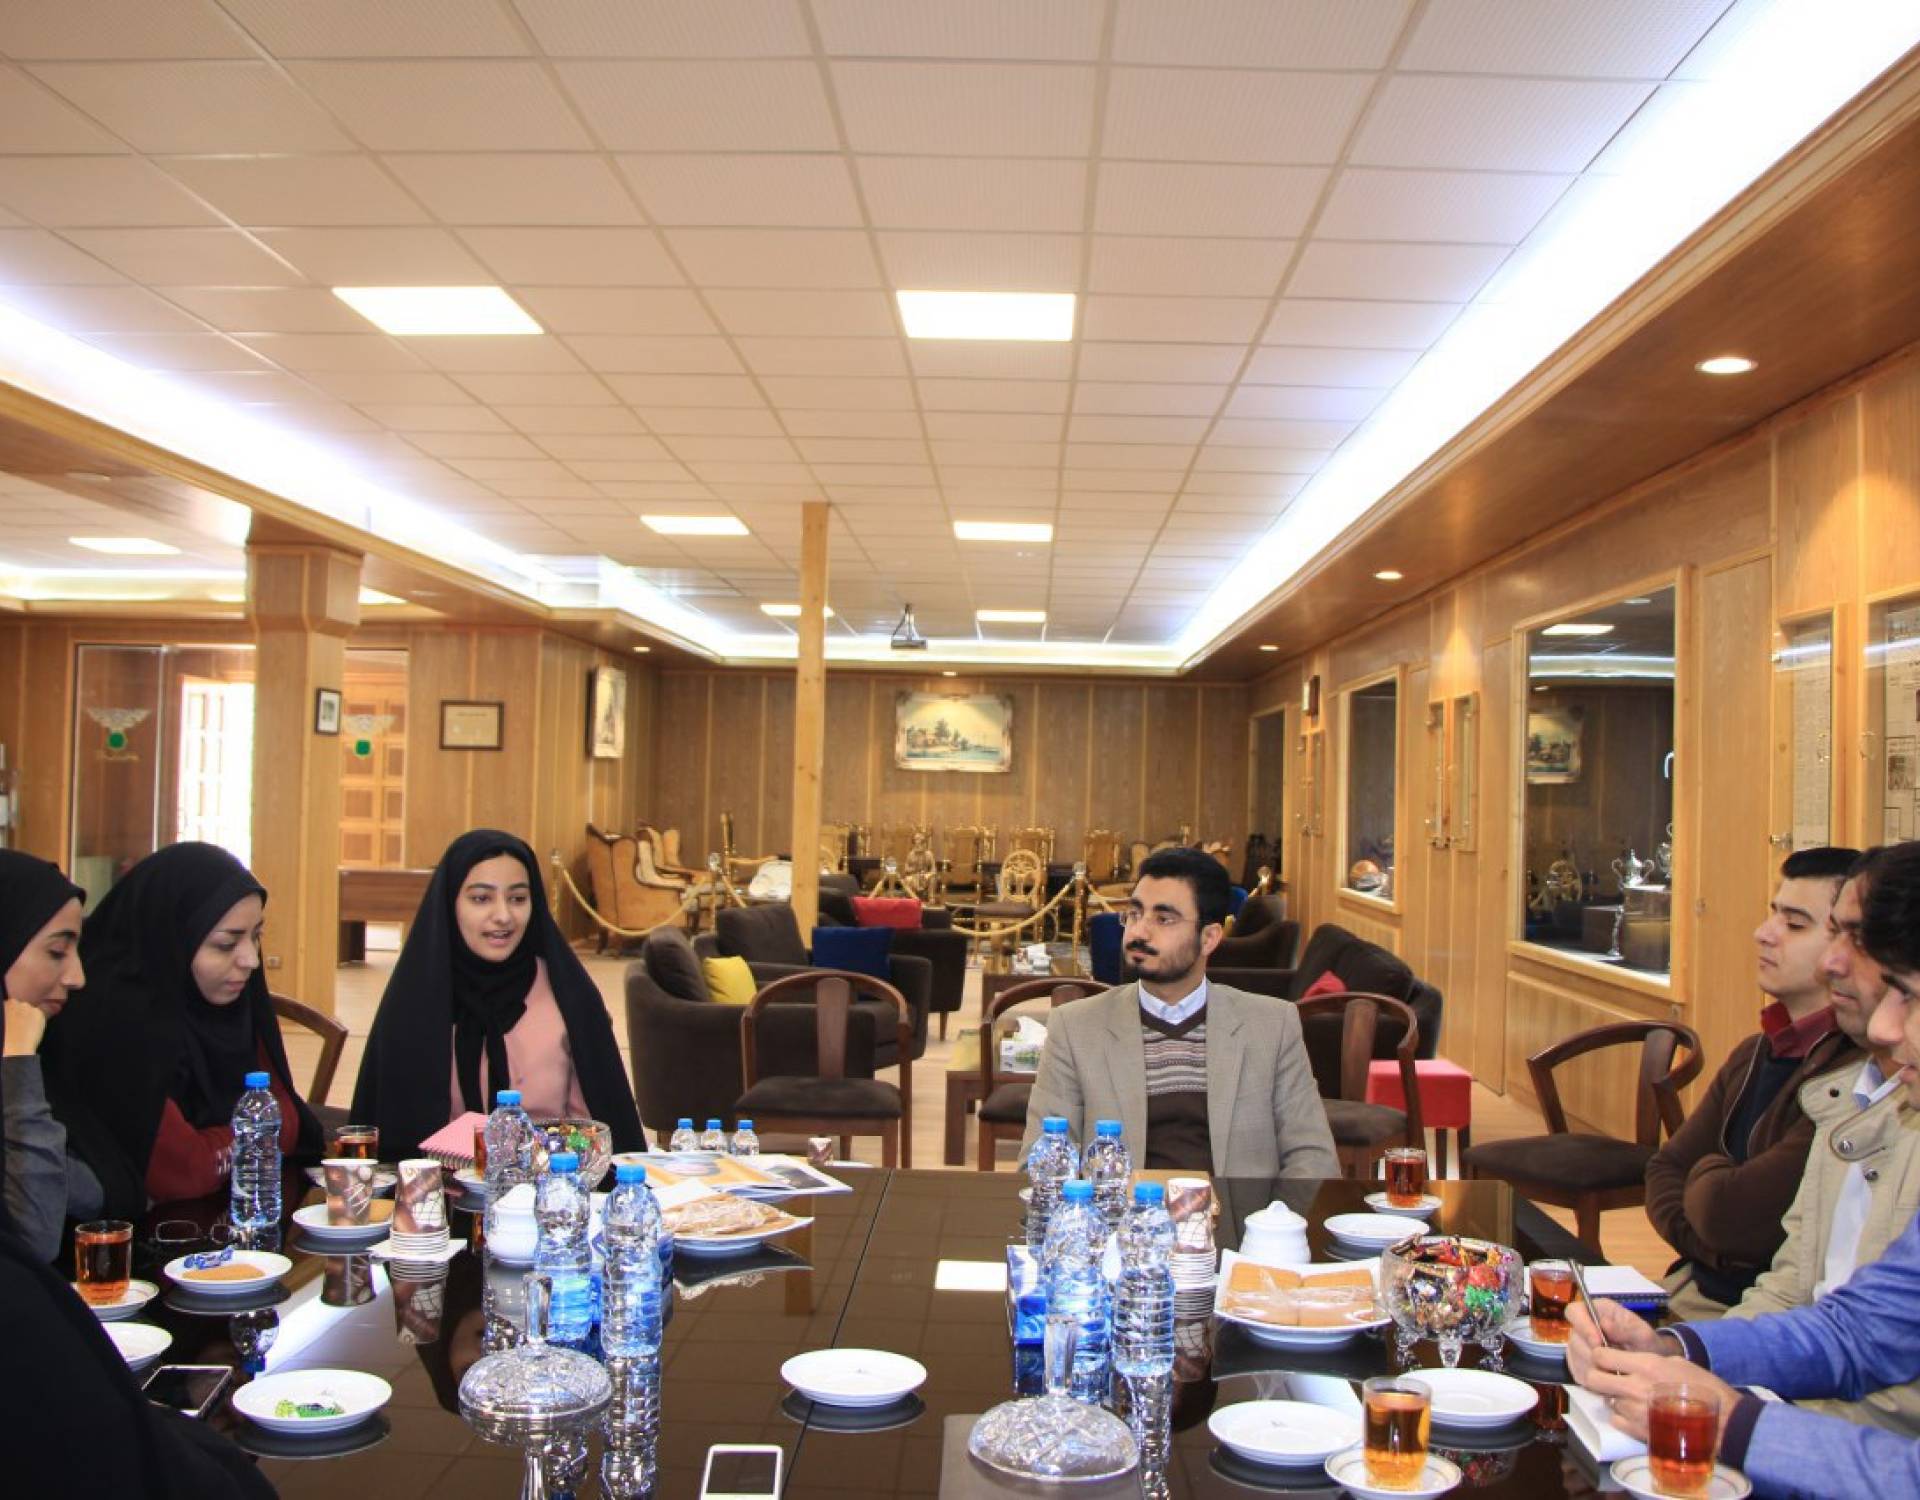 نشست با مدیر مسئولان و سردبیران نشریات دانشجویی بانوان دانشگاه